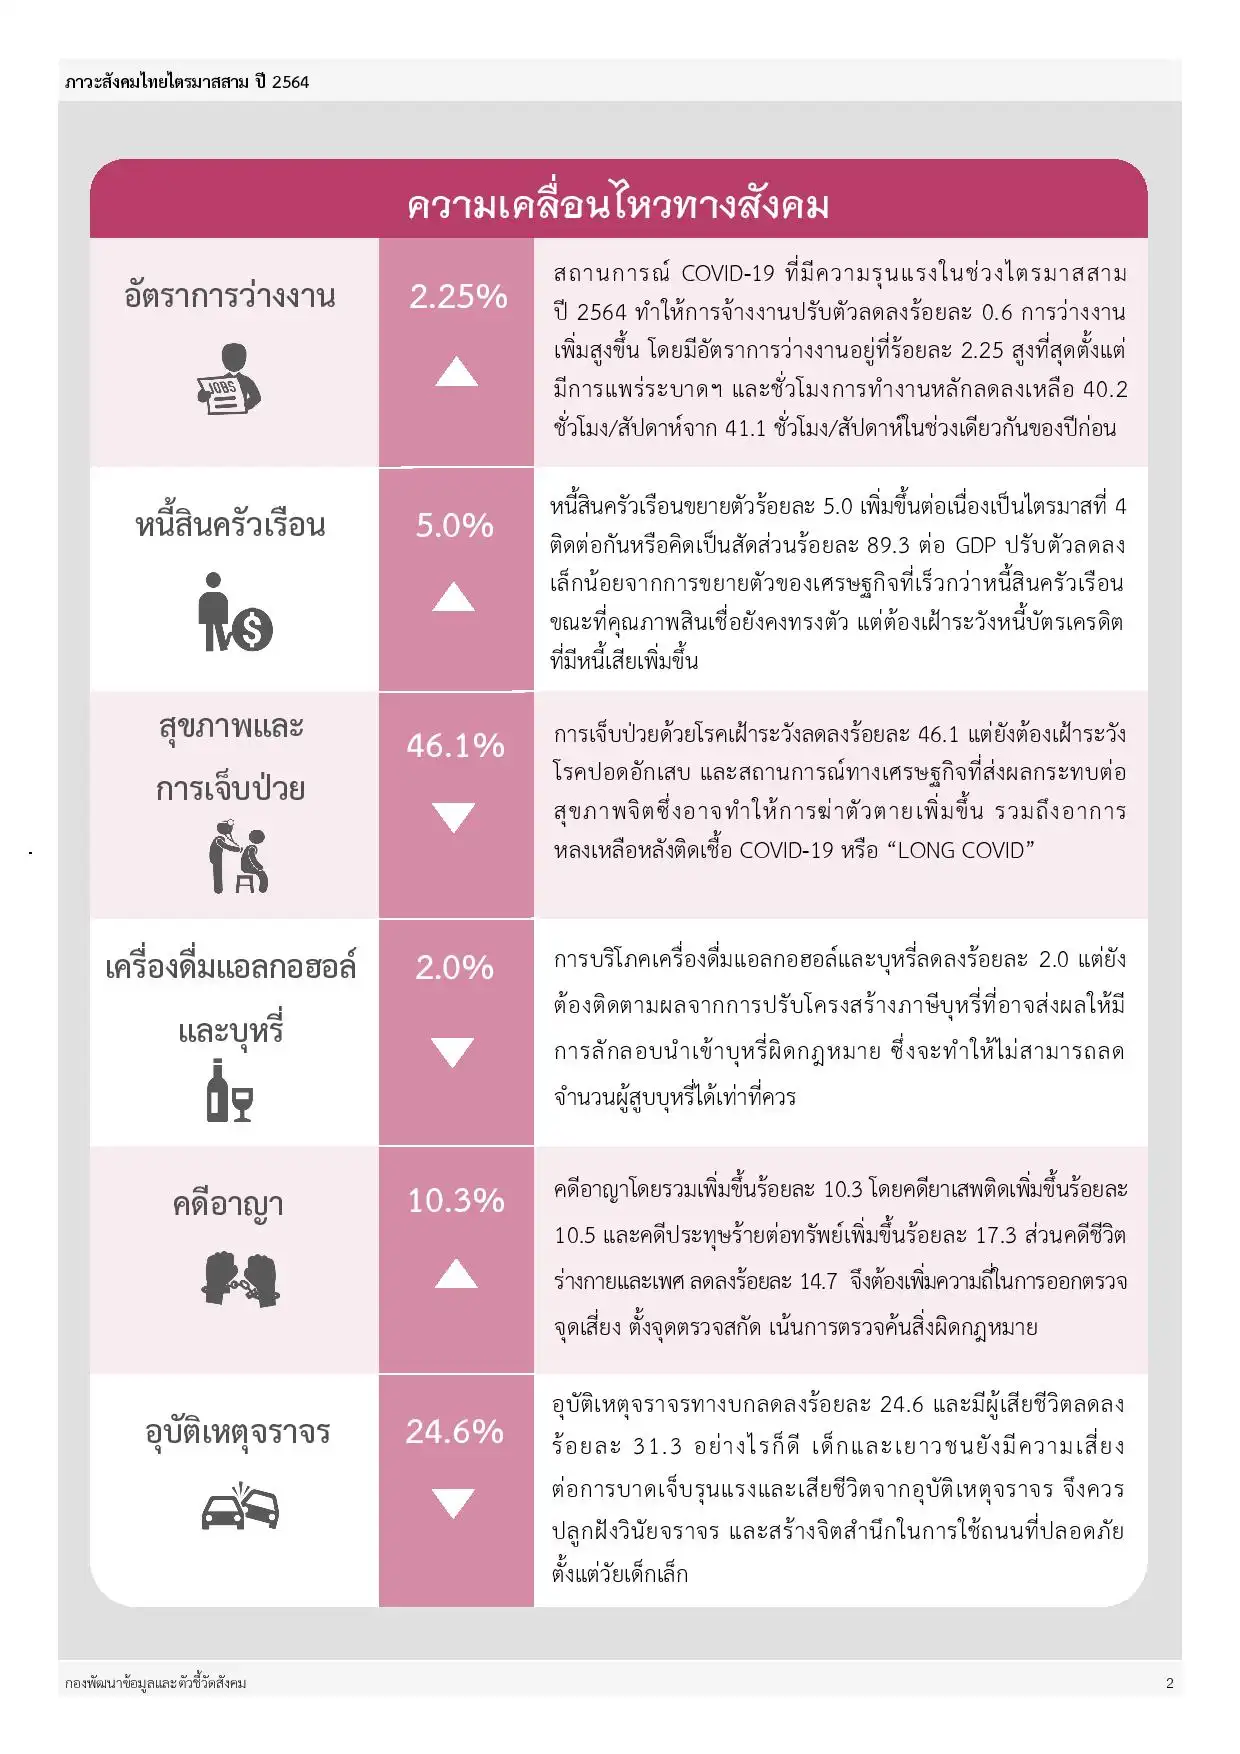 ภาวะสังคมไทยไตรมาสสาม ปี 2564 (Social situation and outlook) สภาพัฒน์ฯ HealthServ